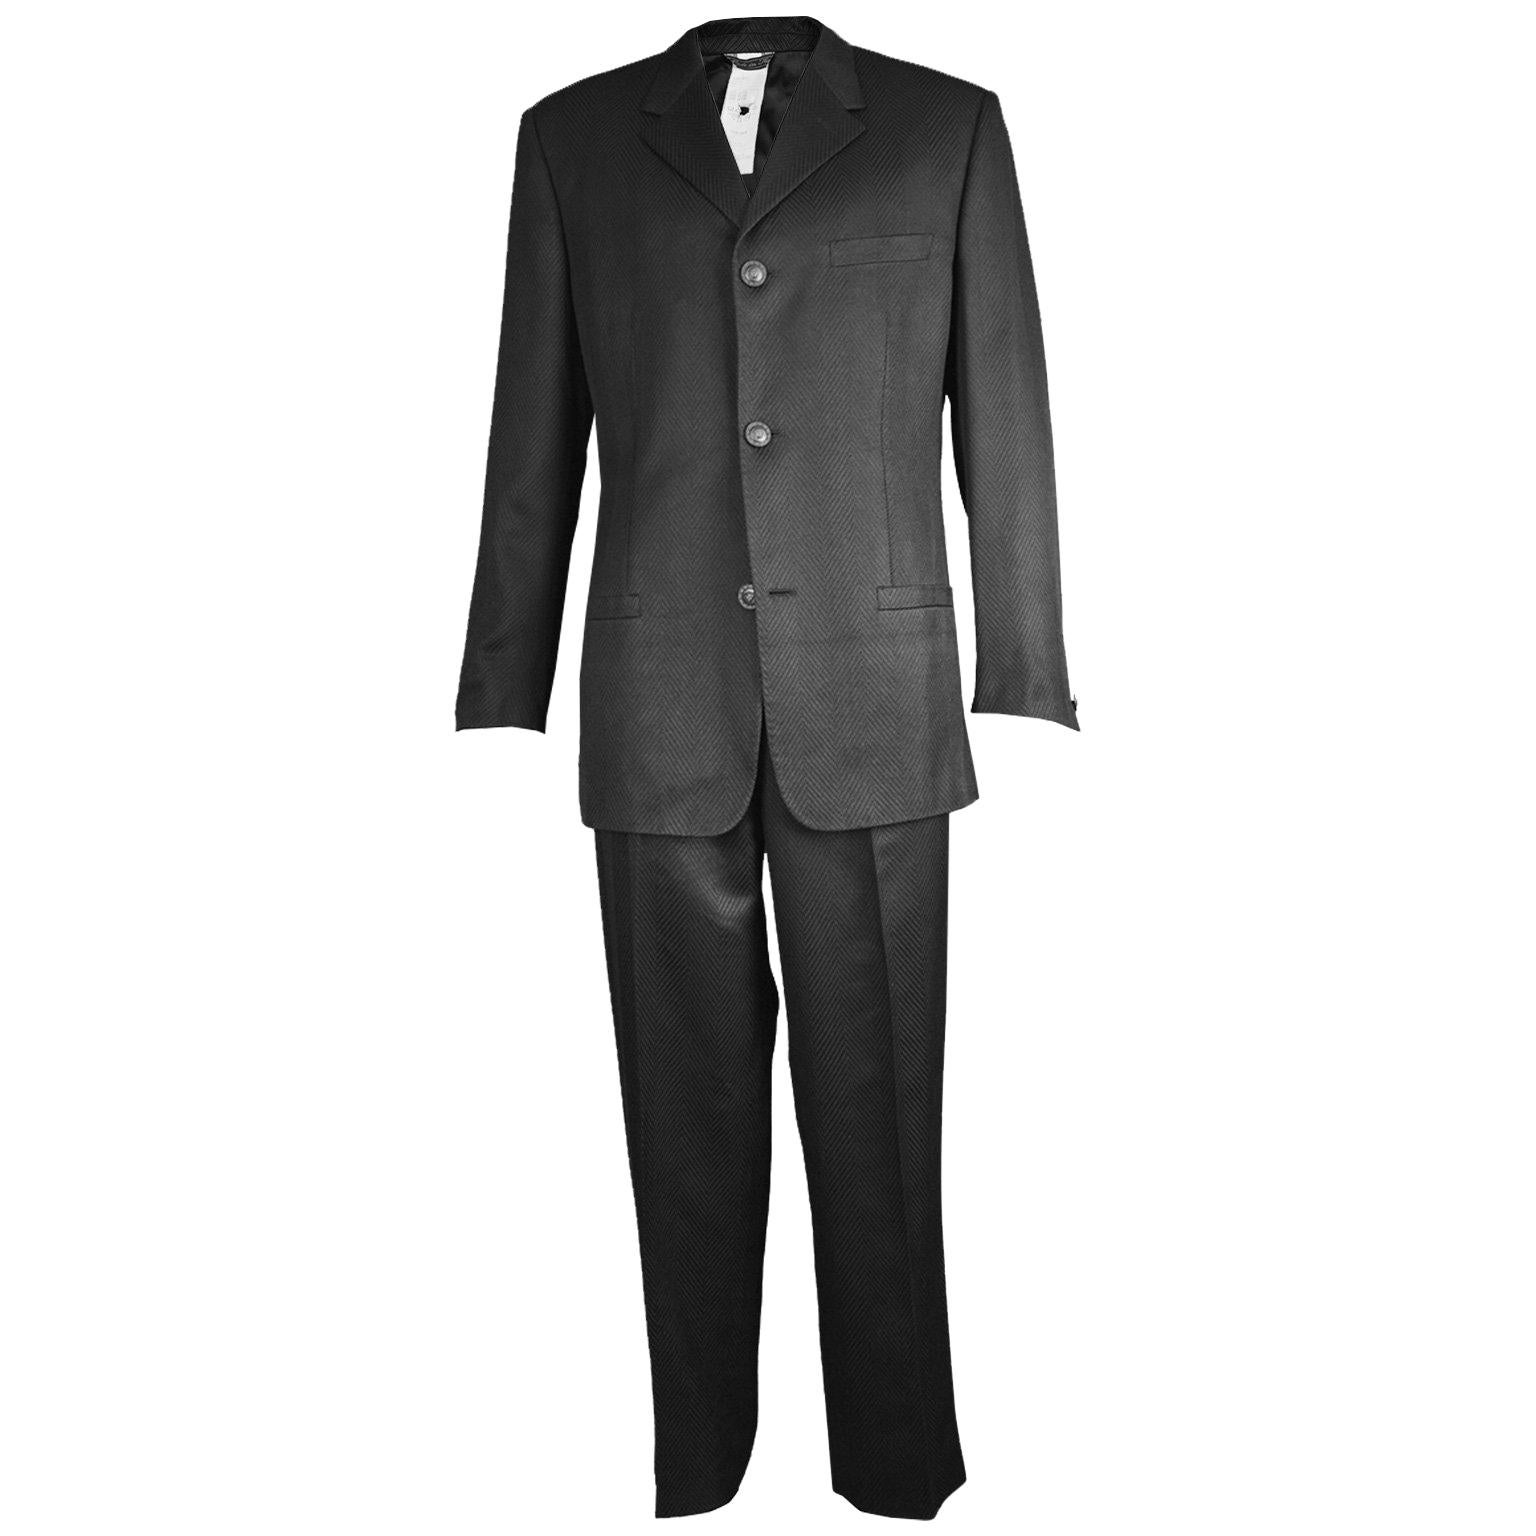 Gianni Versace Men's Black 100% Silk Jacquard 2 Piece Vintage Suit, 1990s For Sale